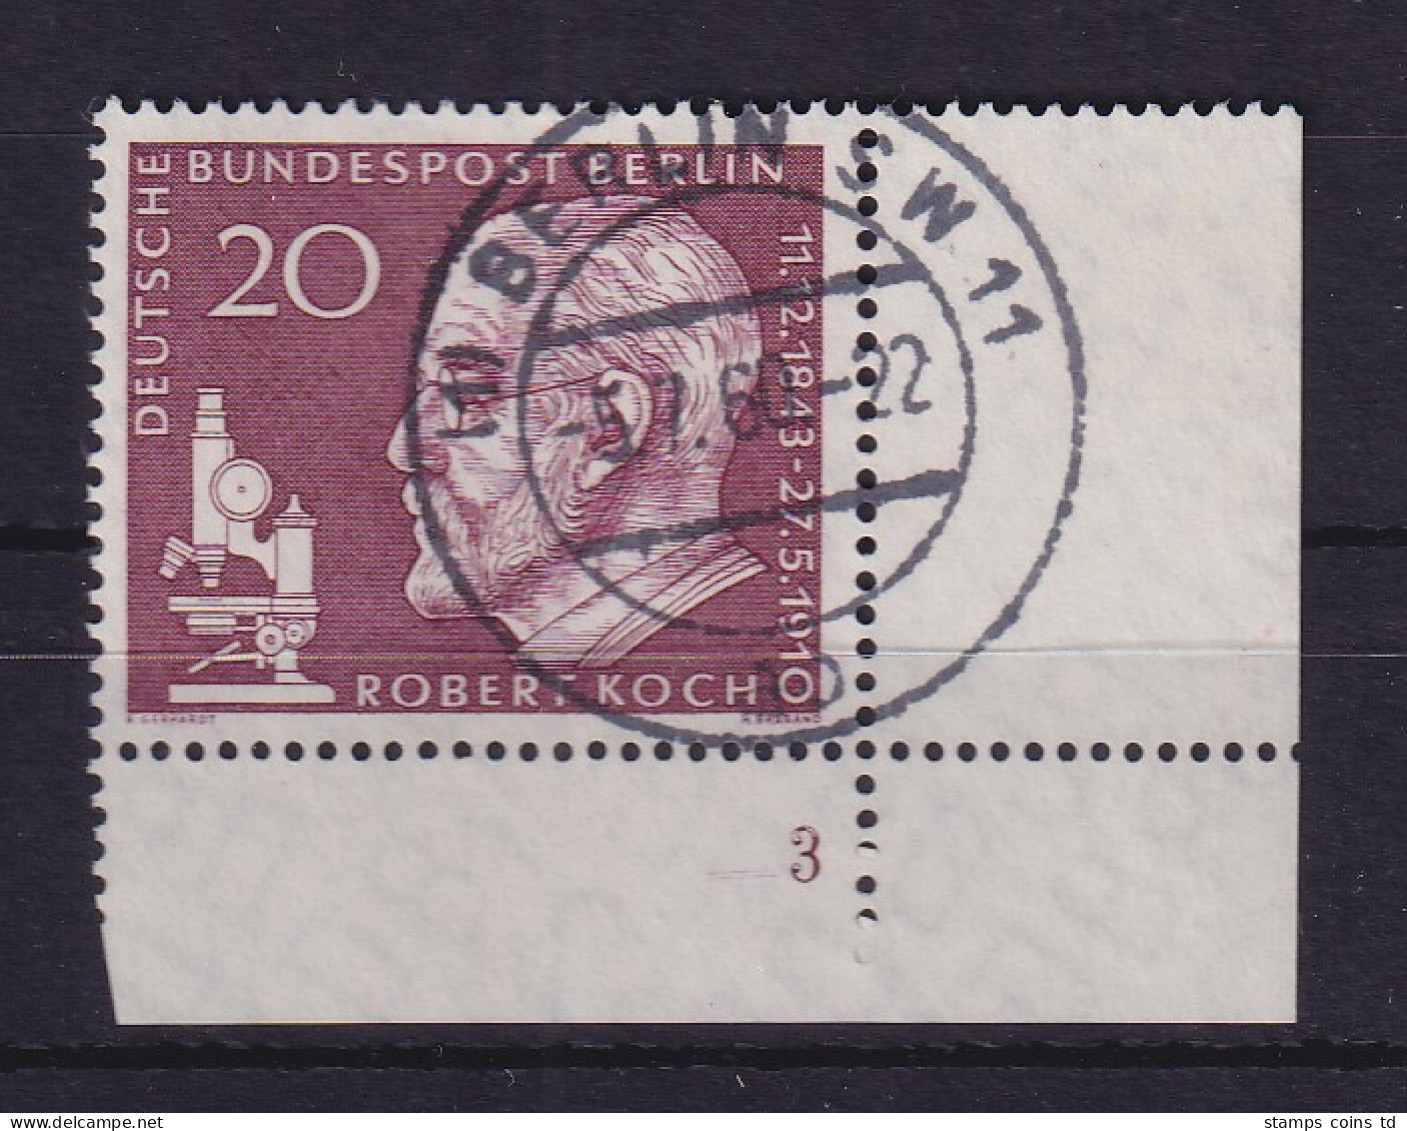 Berlin 1960 Robert Koch Mi-Nr. 191 Eckrandstück UR Mit Formnummer 3 Gestempelt  - Gebraucht